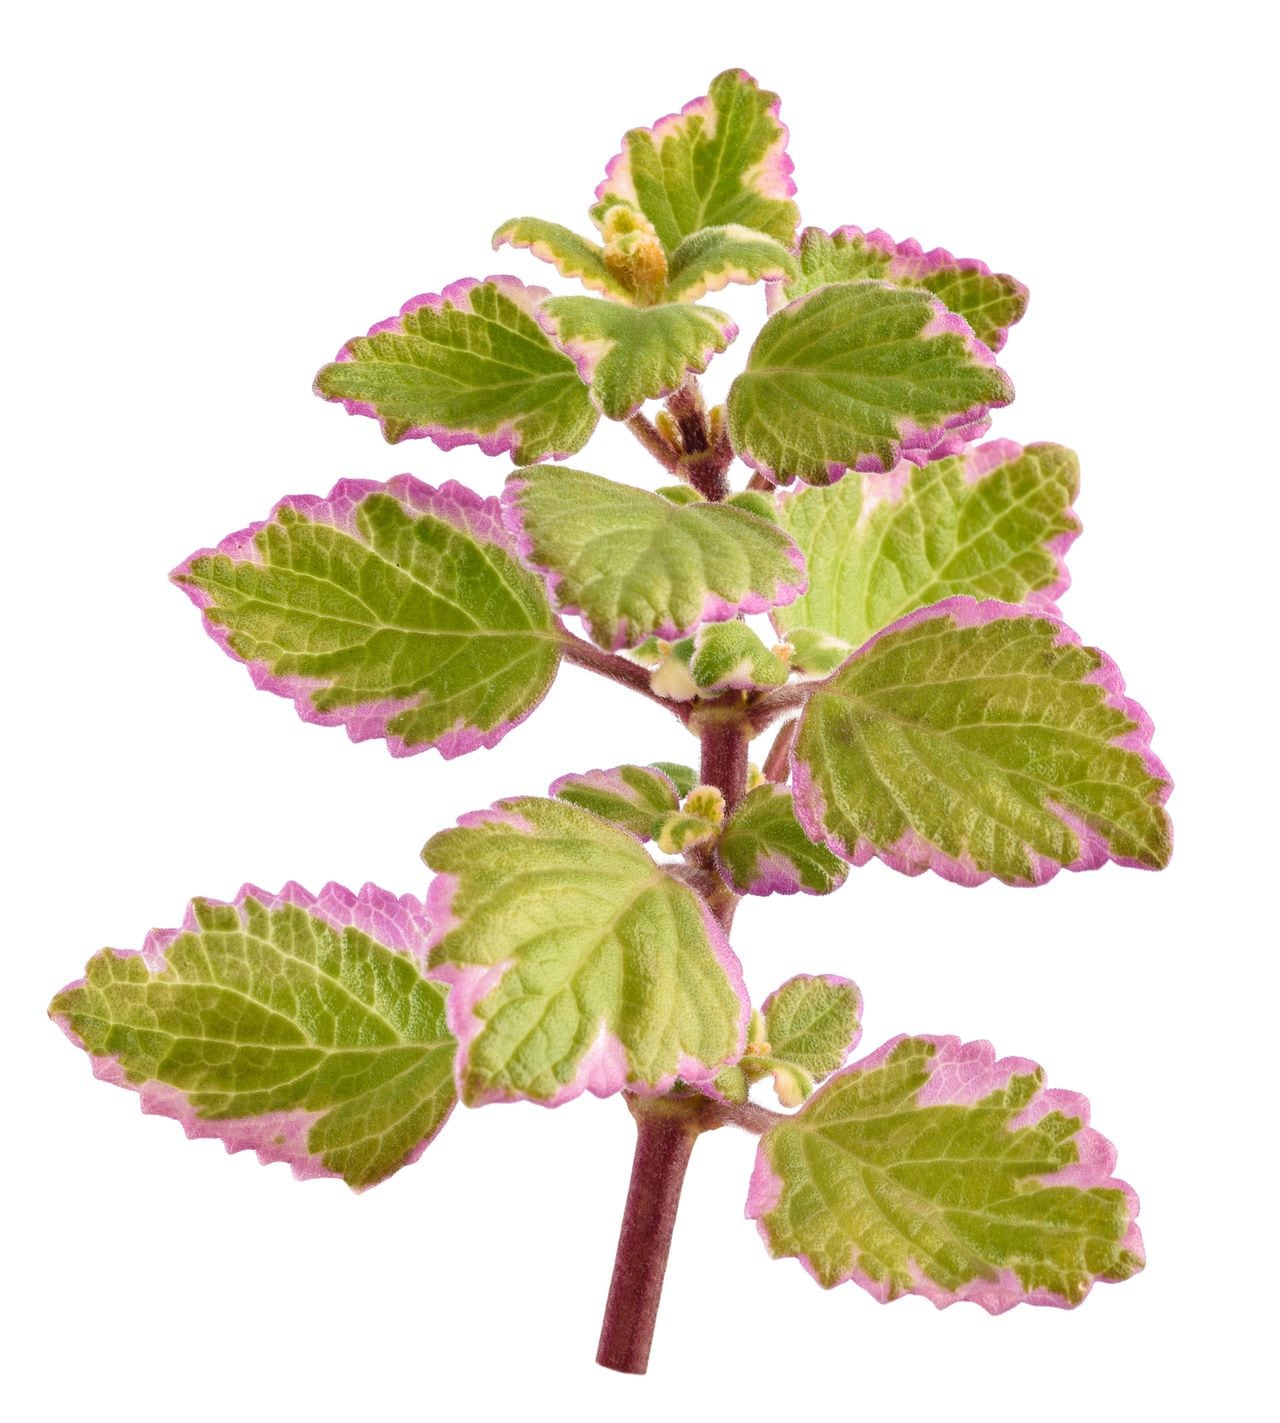 Swedish Ivy sprig isolated on white background